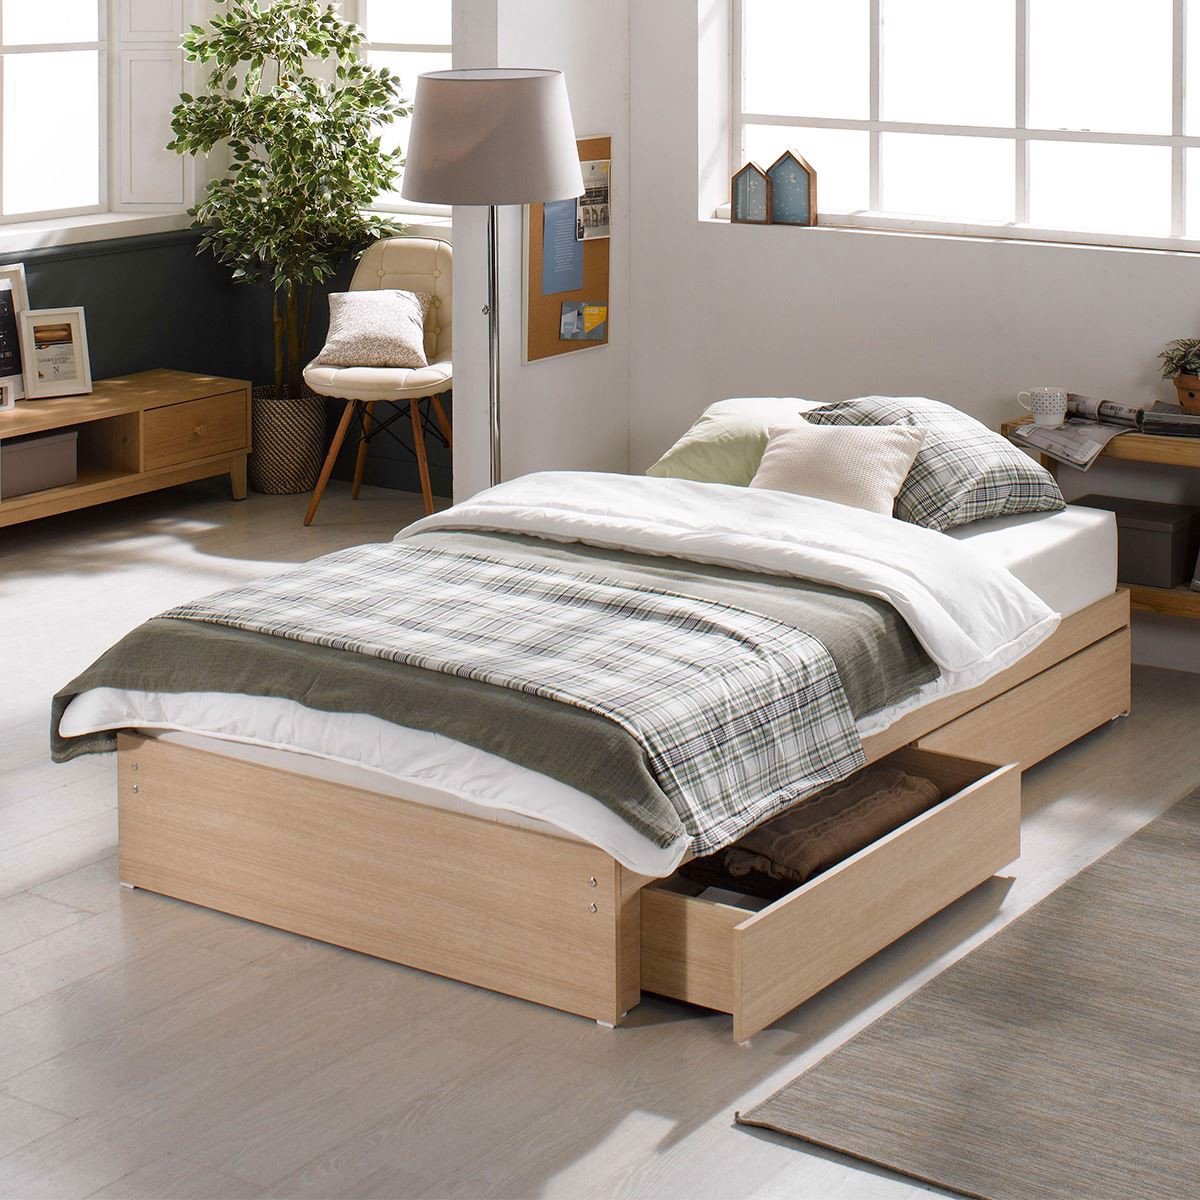 Về chất liệu sản xuất của giường gỗ đơn